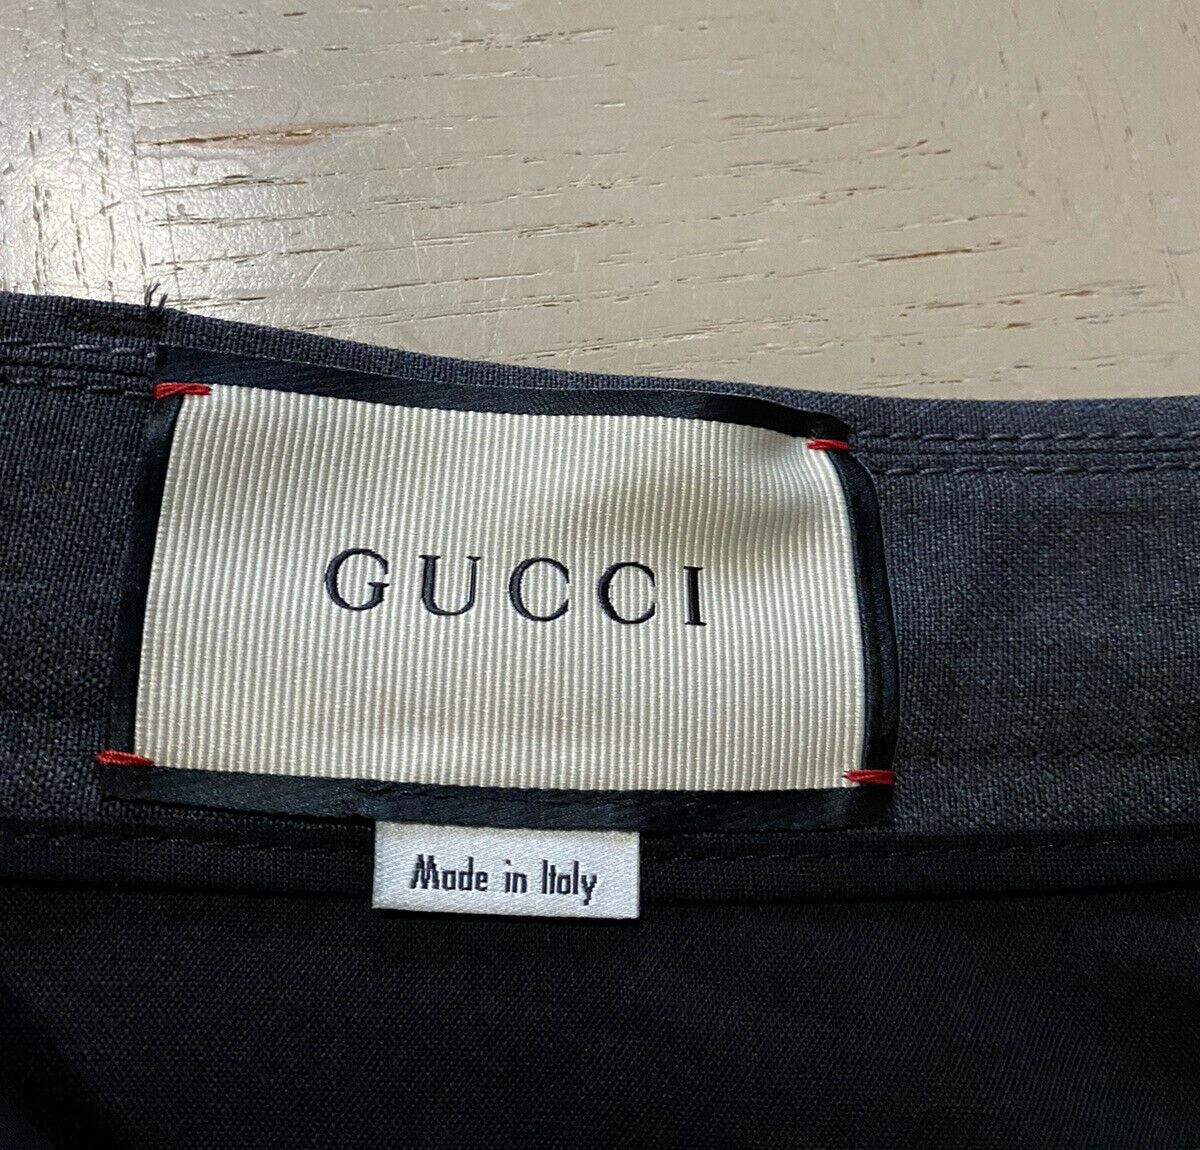 Мужские короткие брюки Gucci DK, серые, размер 30, США (46 ЕС), Италия, NWT 790 долларов США